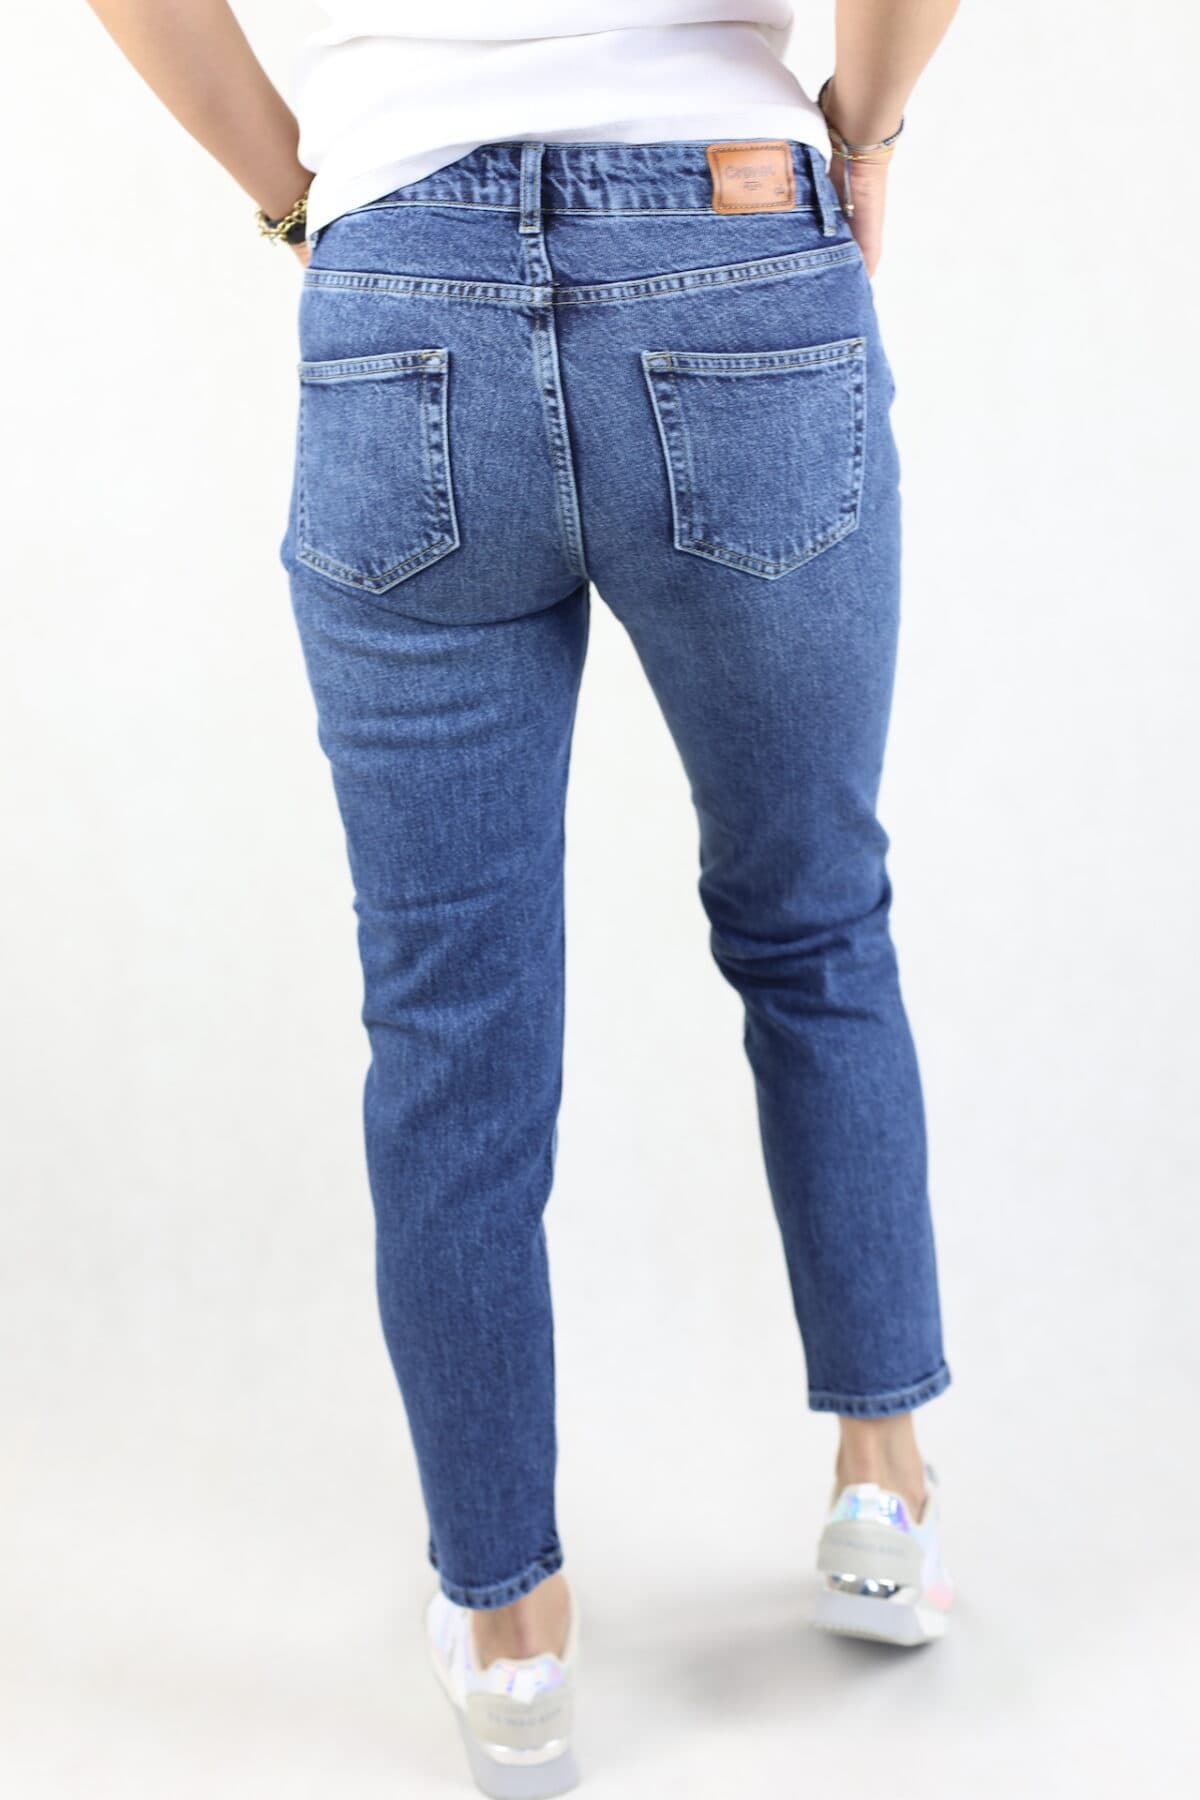 Niebieski jeansy z wysokim stanem w kolorze niebieskim, efekt prania, pięć kieszeni, zapinane na suwak.